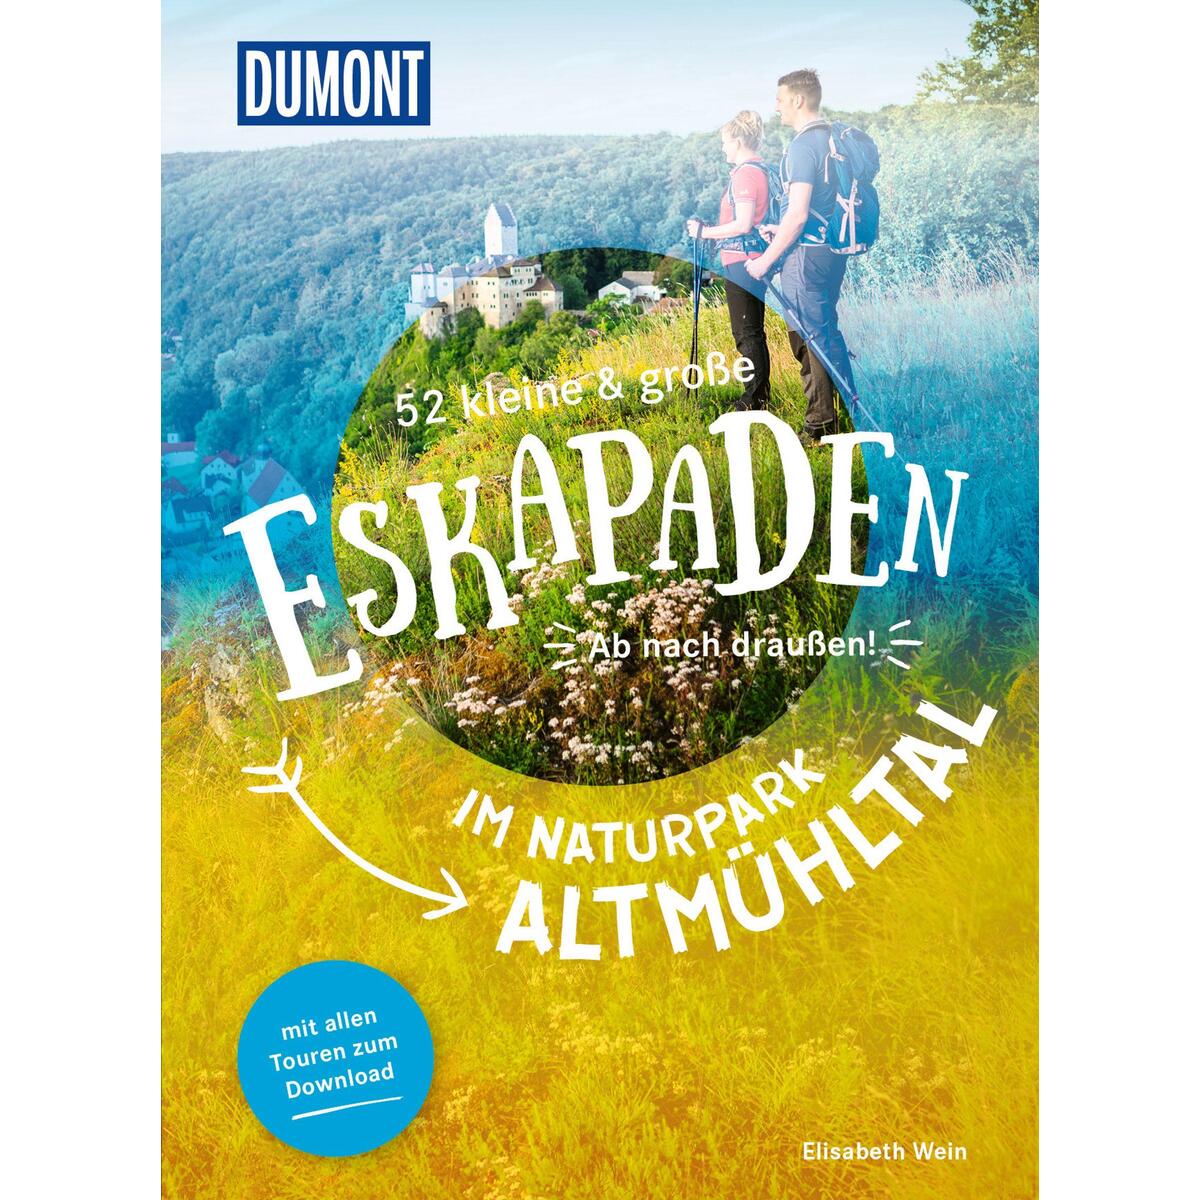 52 kleine & große Eskapaden im Naturpark Altmühltal von Dumont Reise Vlg GmbH + C